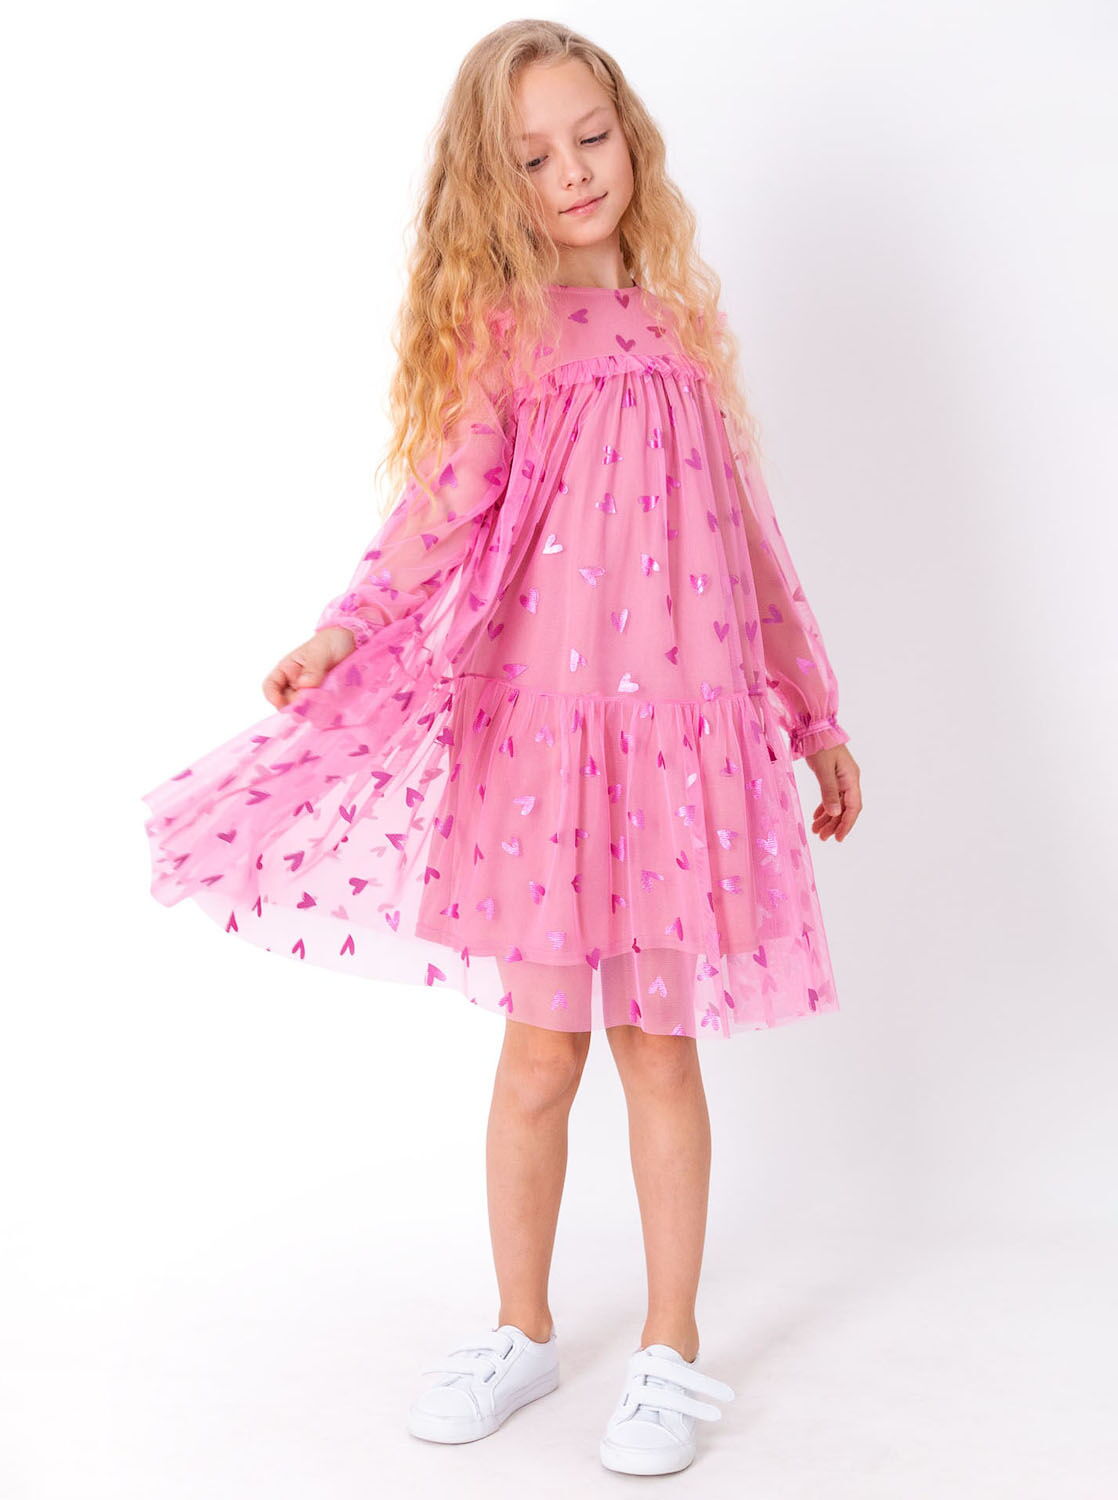 Нарядное платье для девочки Mevis Сердечки розовое 4065-02 - размеры